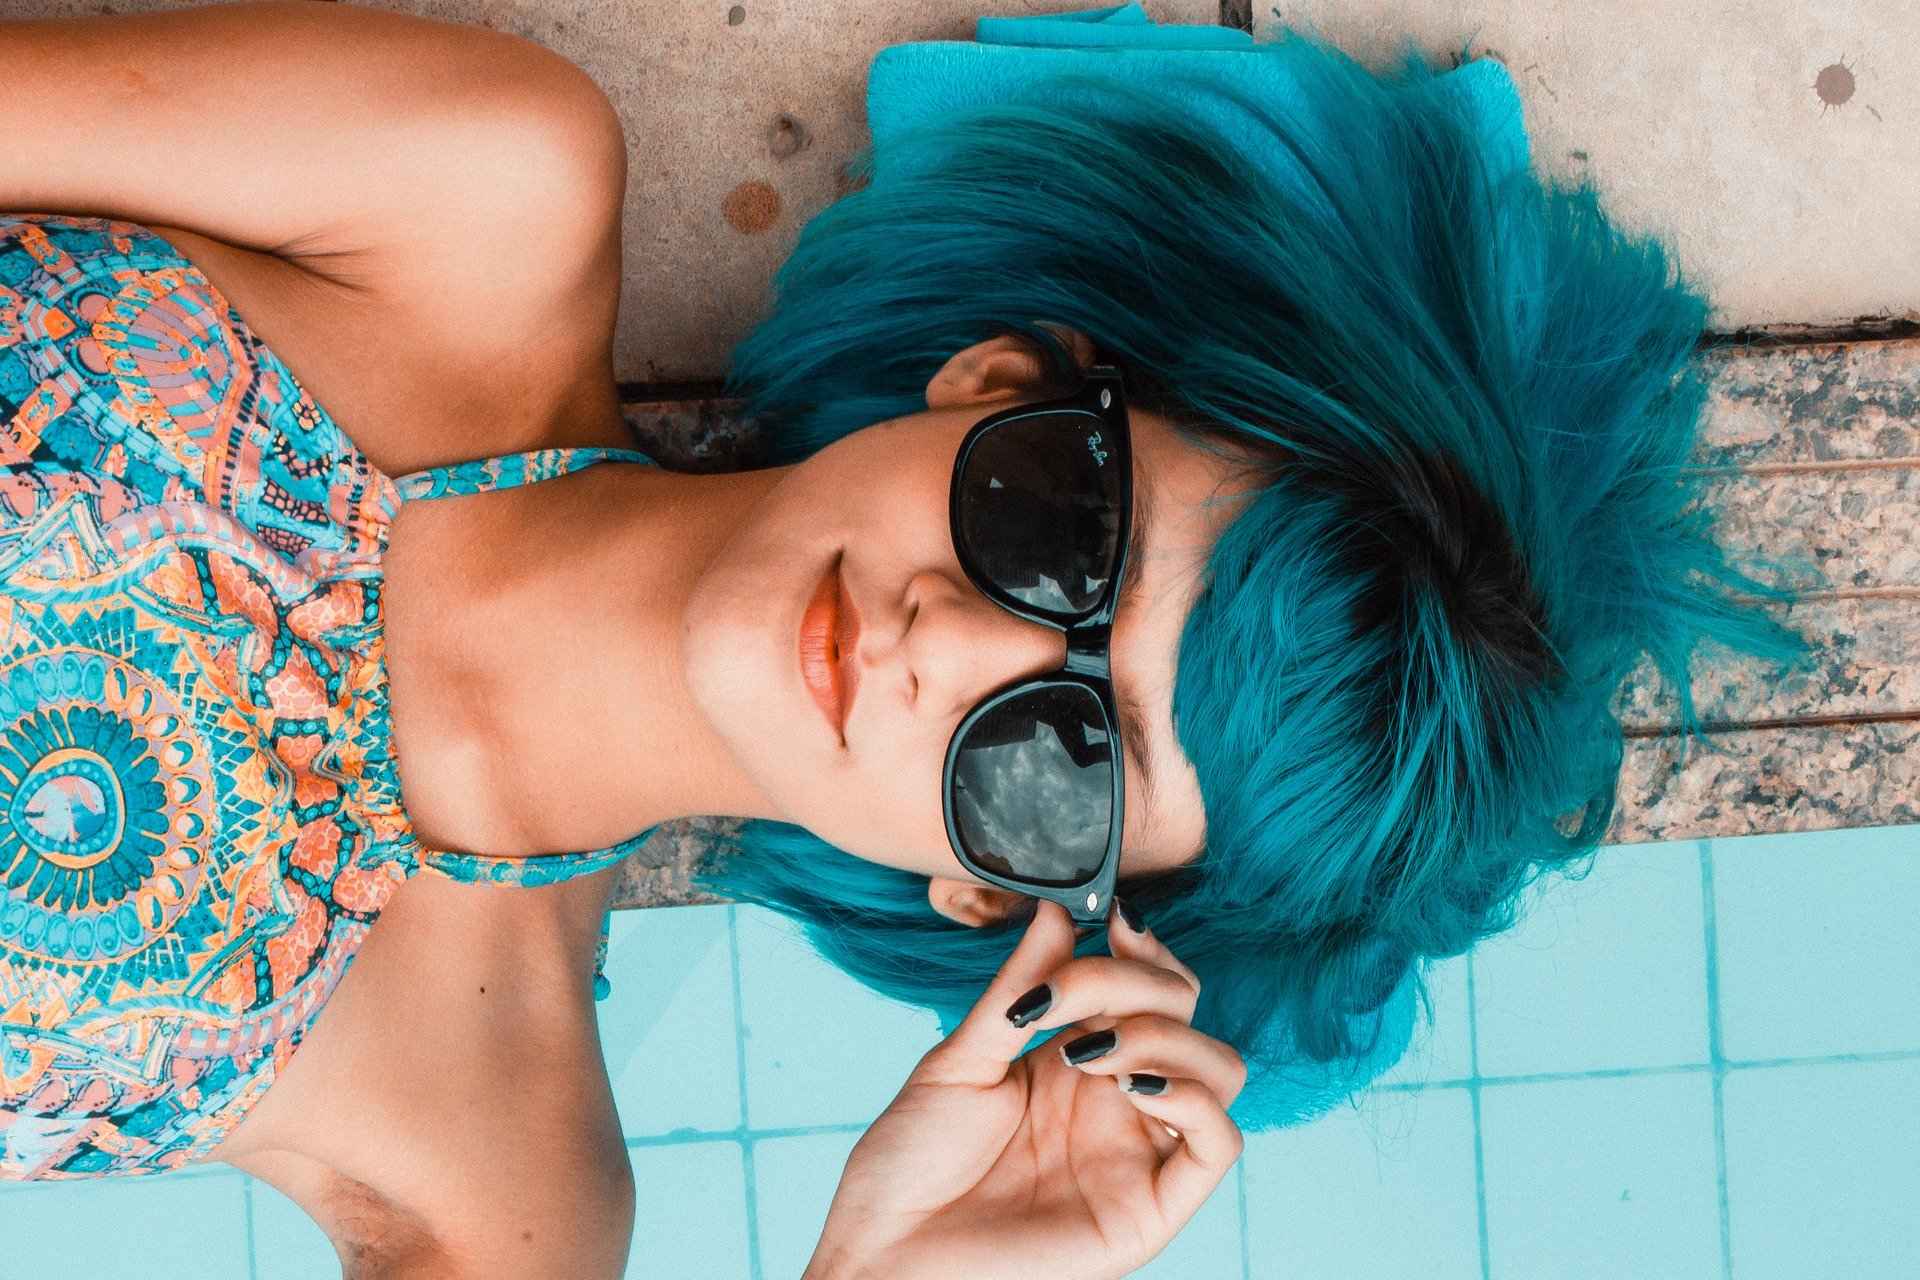 Ein Bild von einer Frau mit blauen Haaren